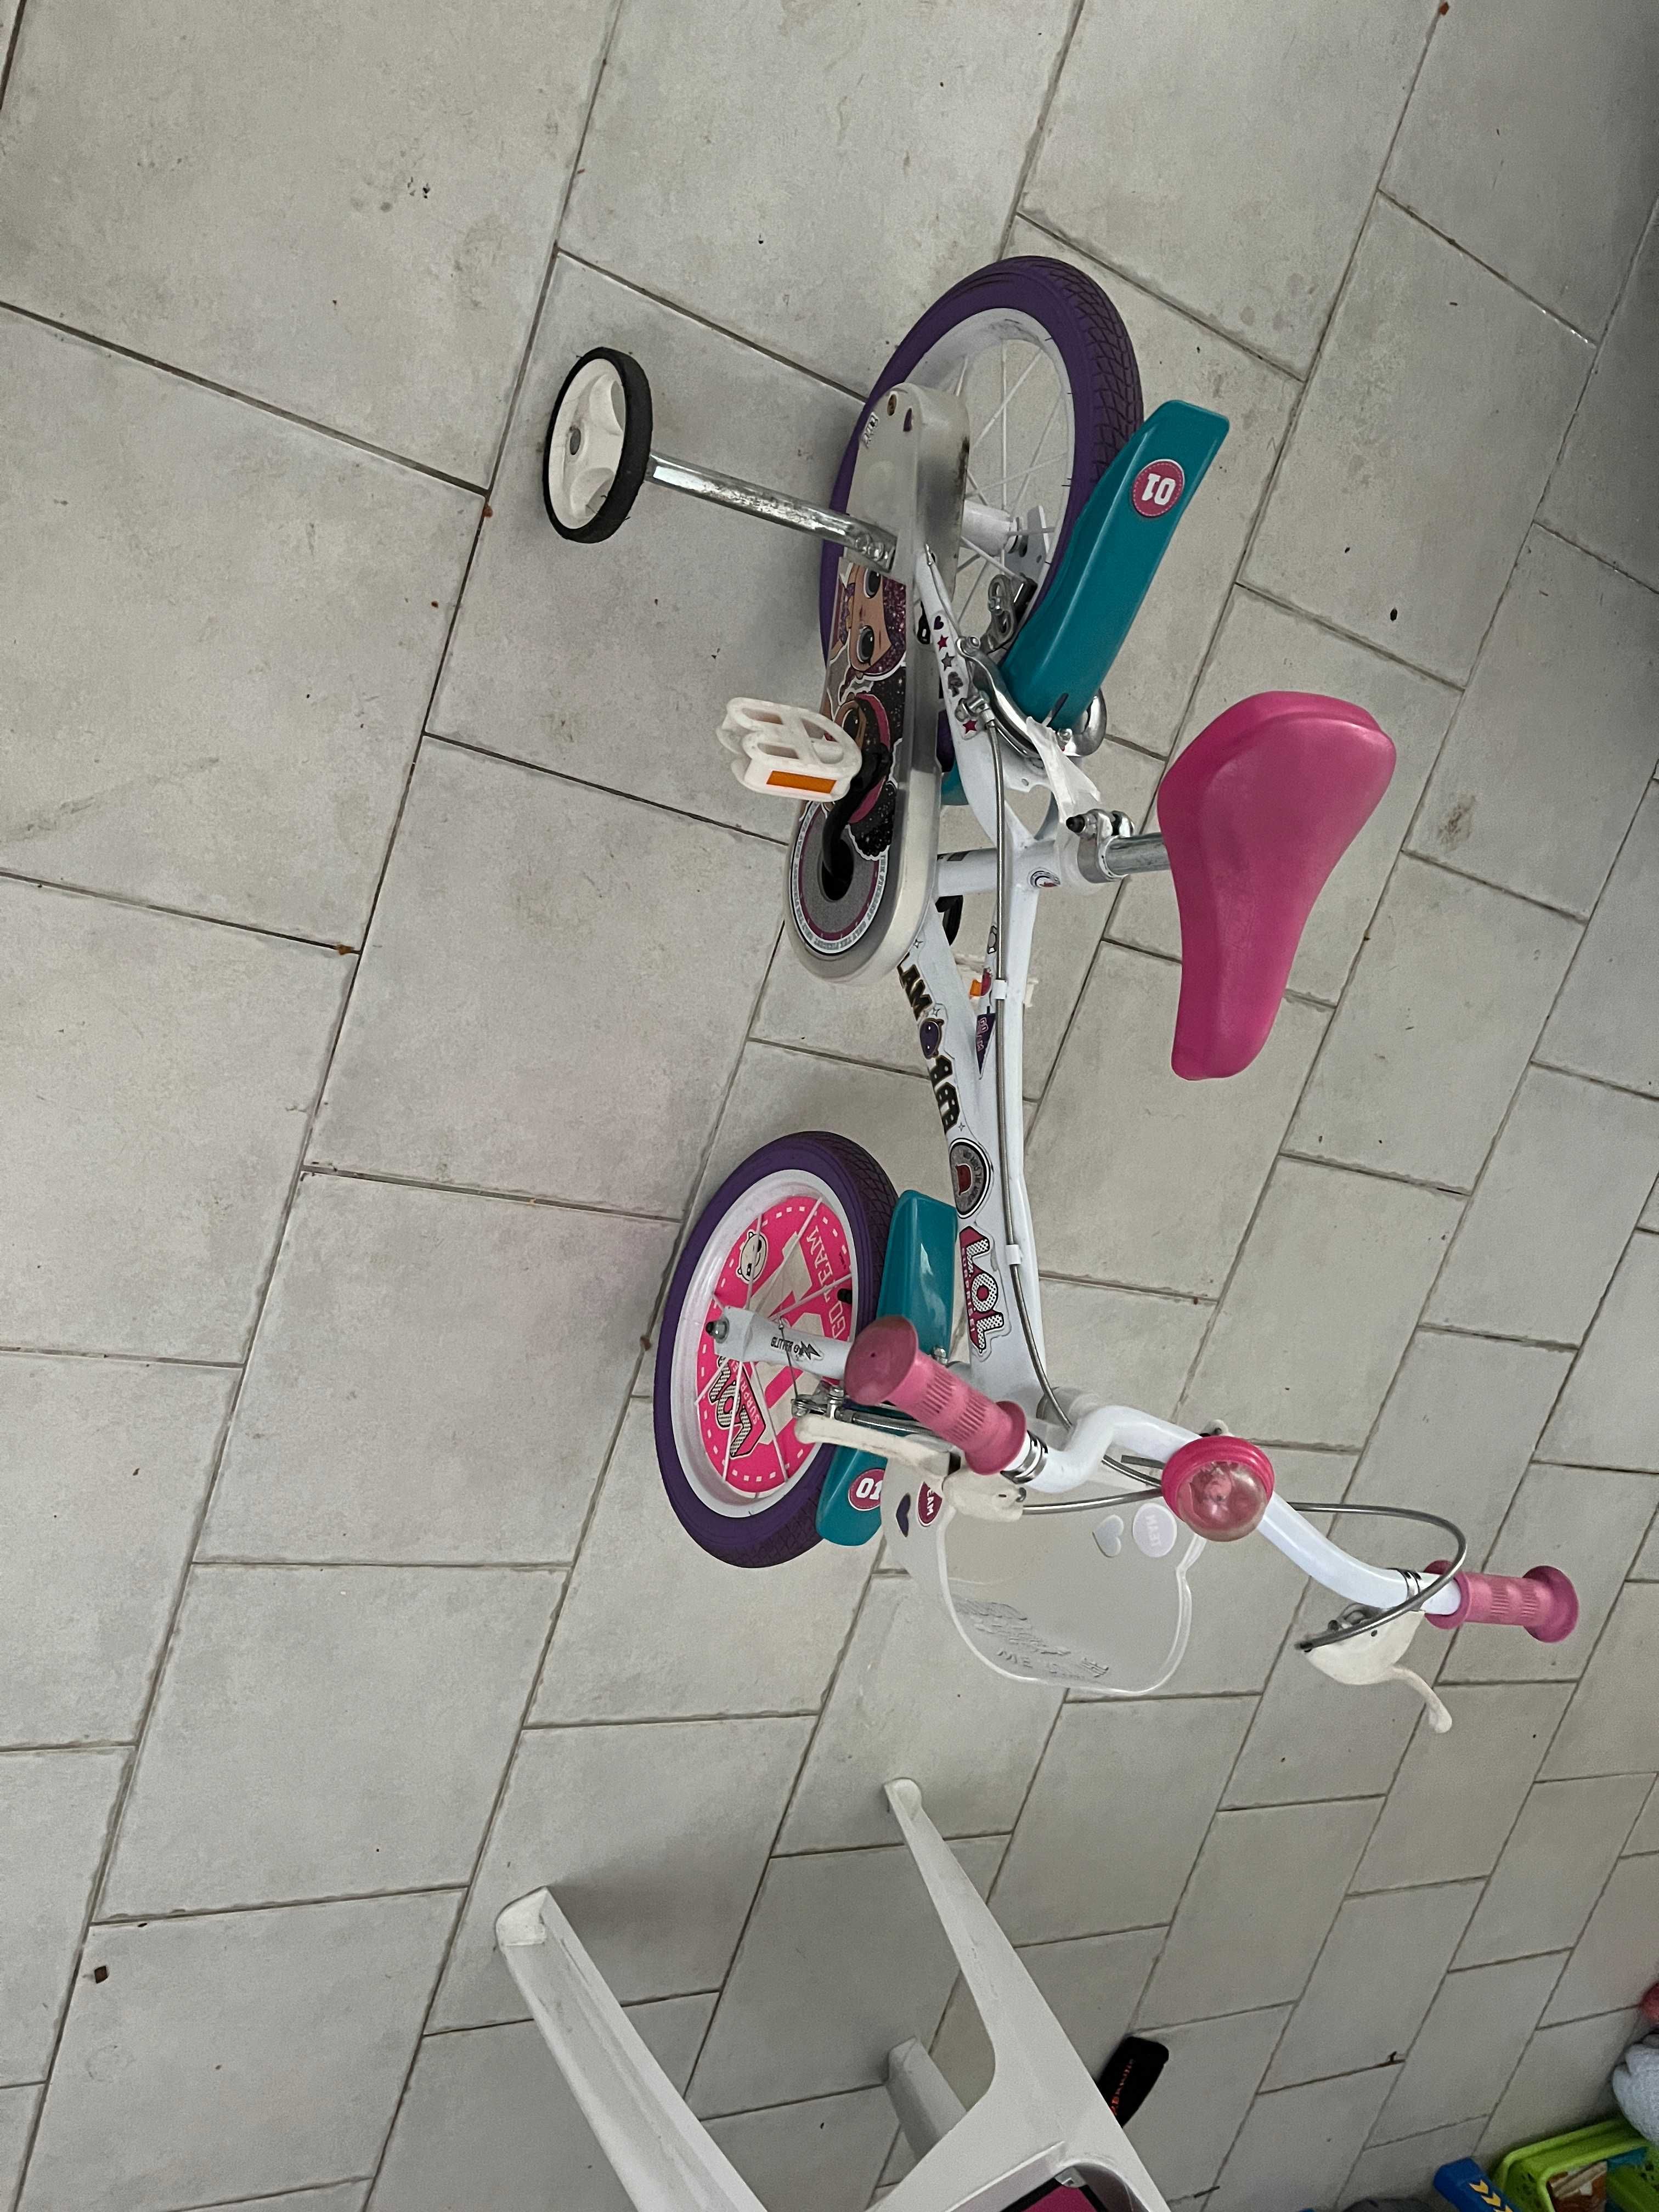 bicicleta da boneca Lol